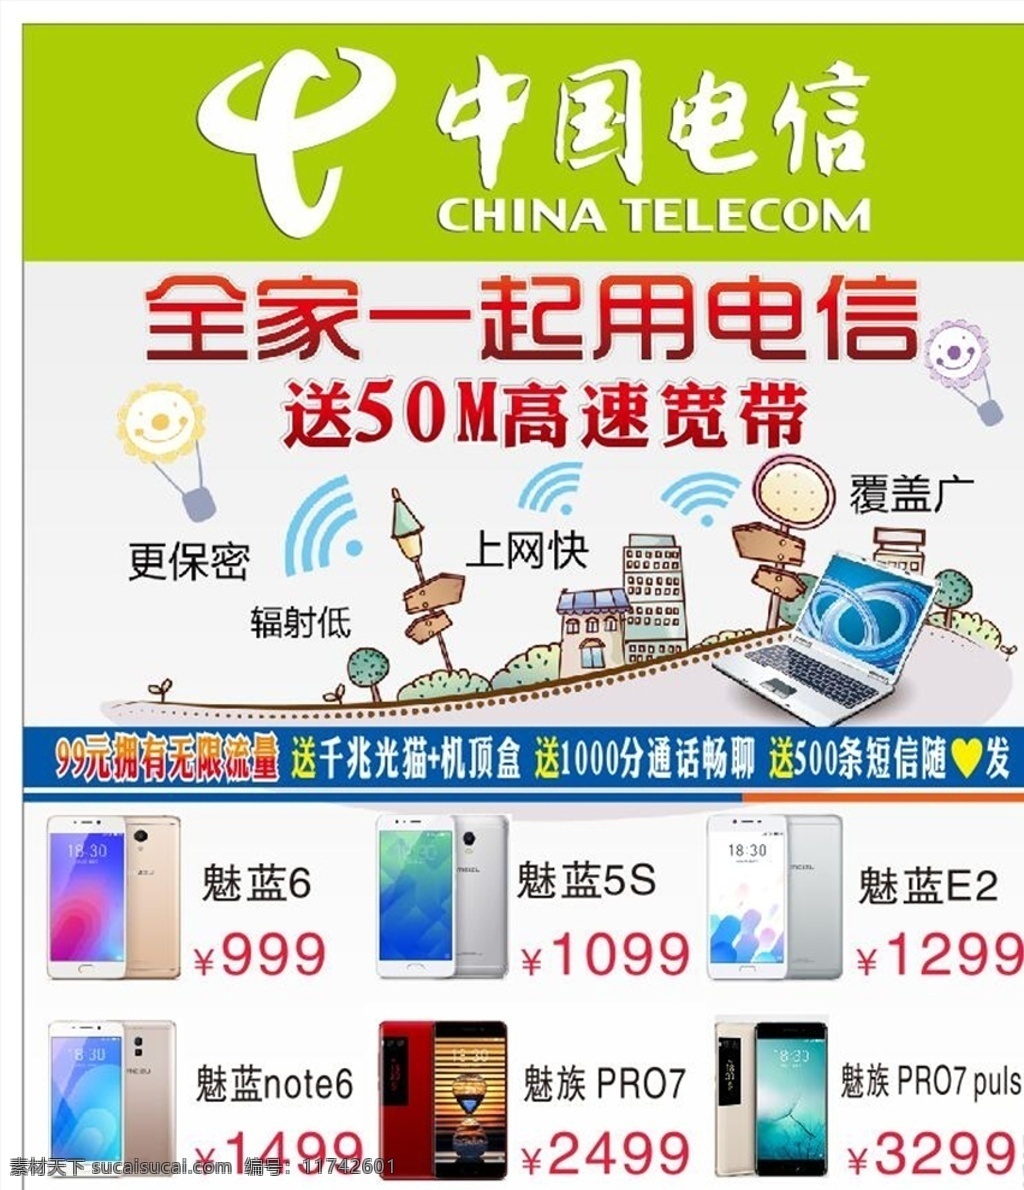 电信宽带办理 中国电信 50m 高速宽带 家庭 手机 魅族 便捷上网 无限流量 千兆光猫 业务套餐